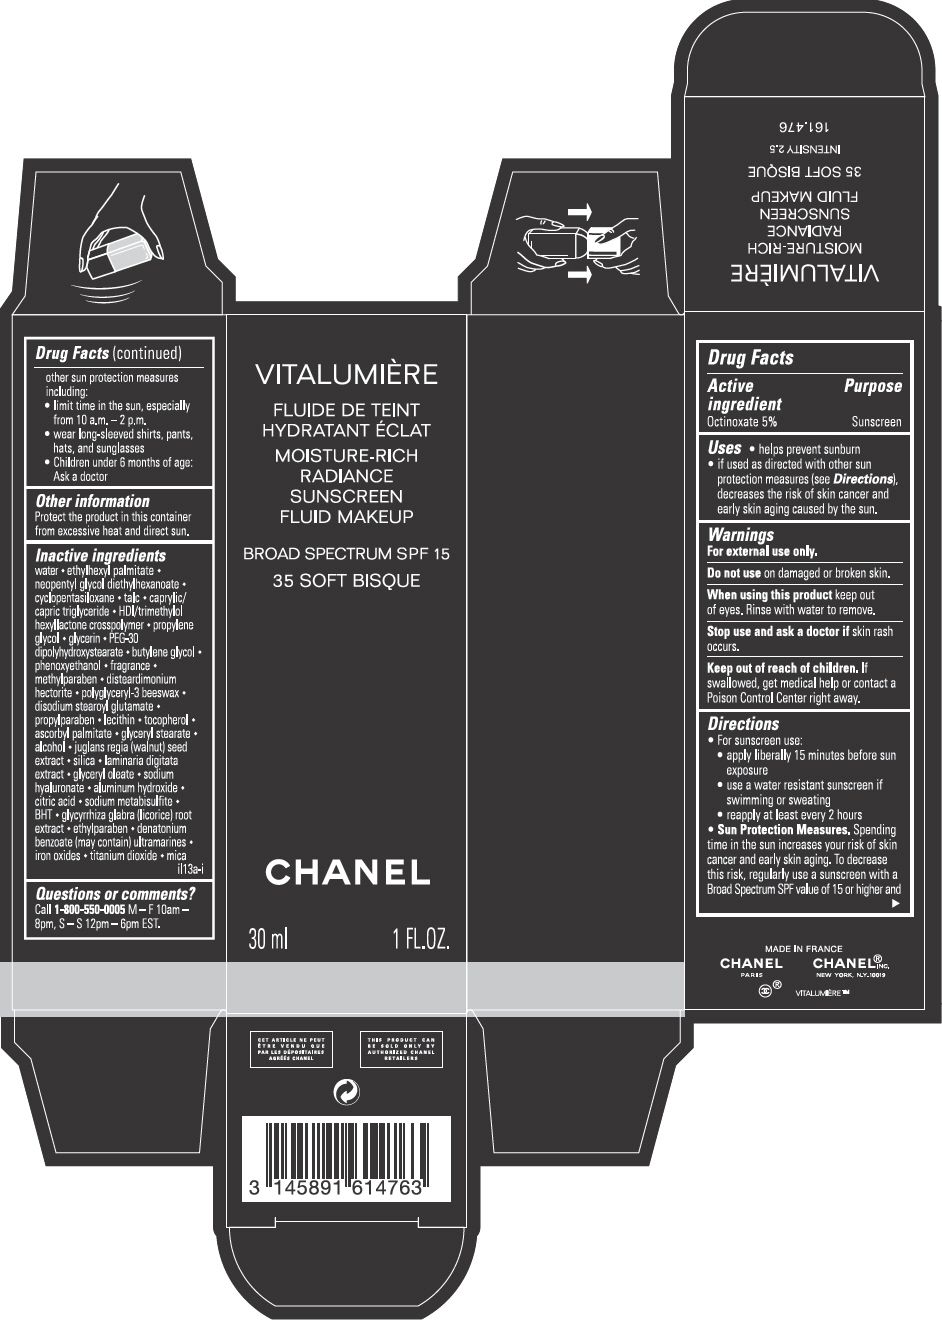 PRINCIPAL DISPLAY PANEL - 30 mL Bottle Carton - 35 Soft Bisque